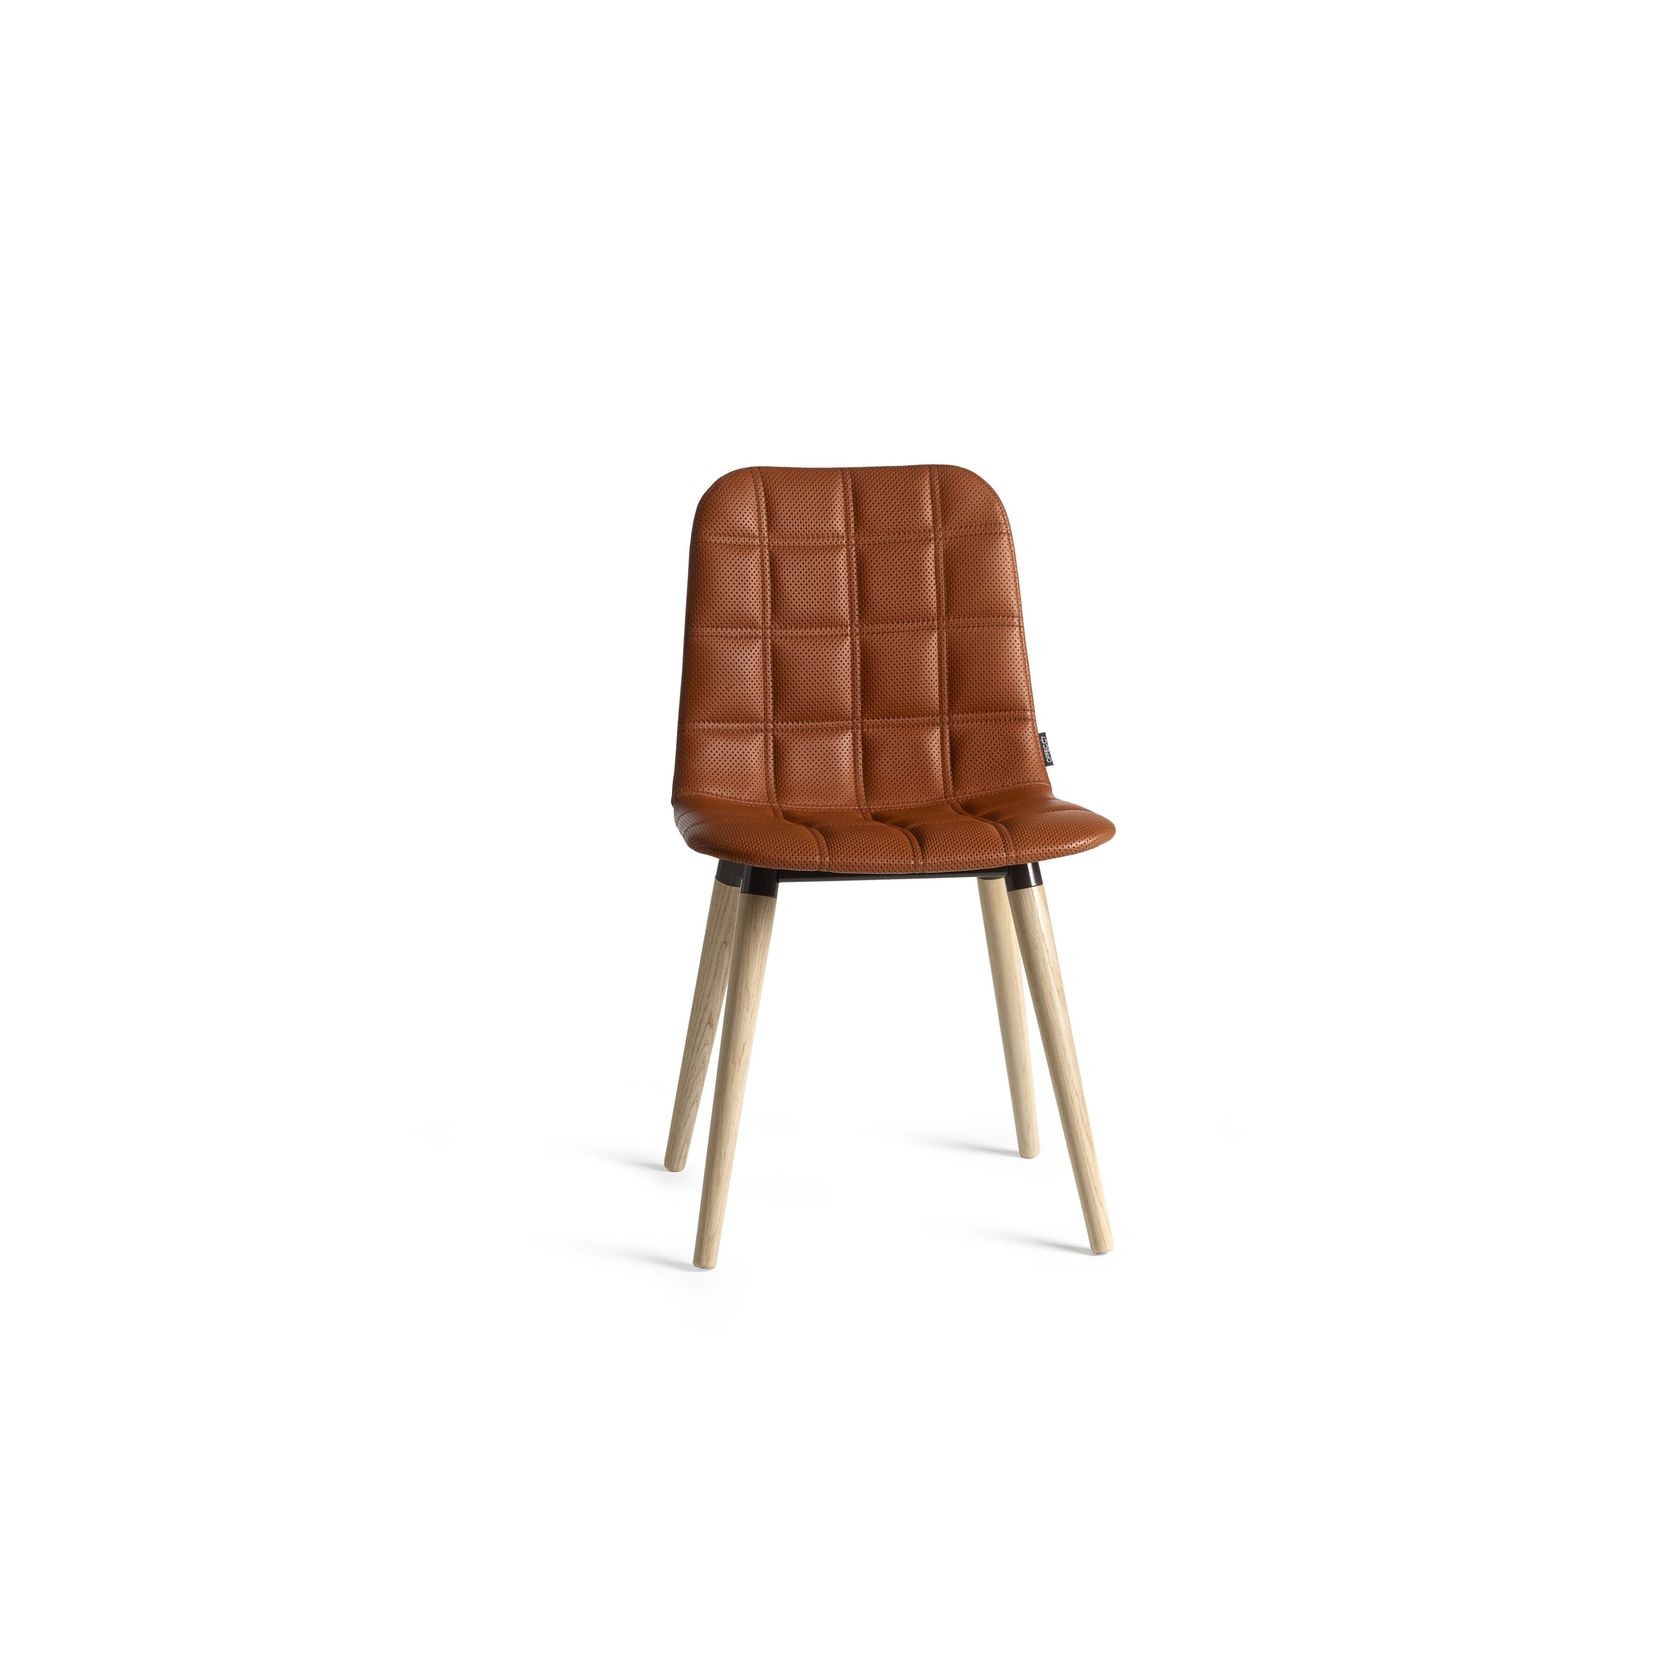 Bop Wood Chair by Knudsen Berg Hindenes gallery detail image